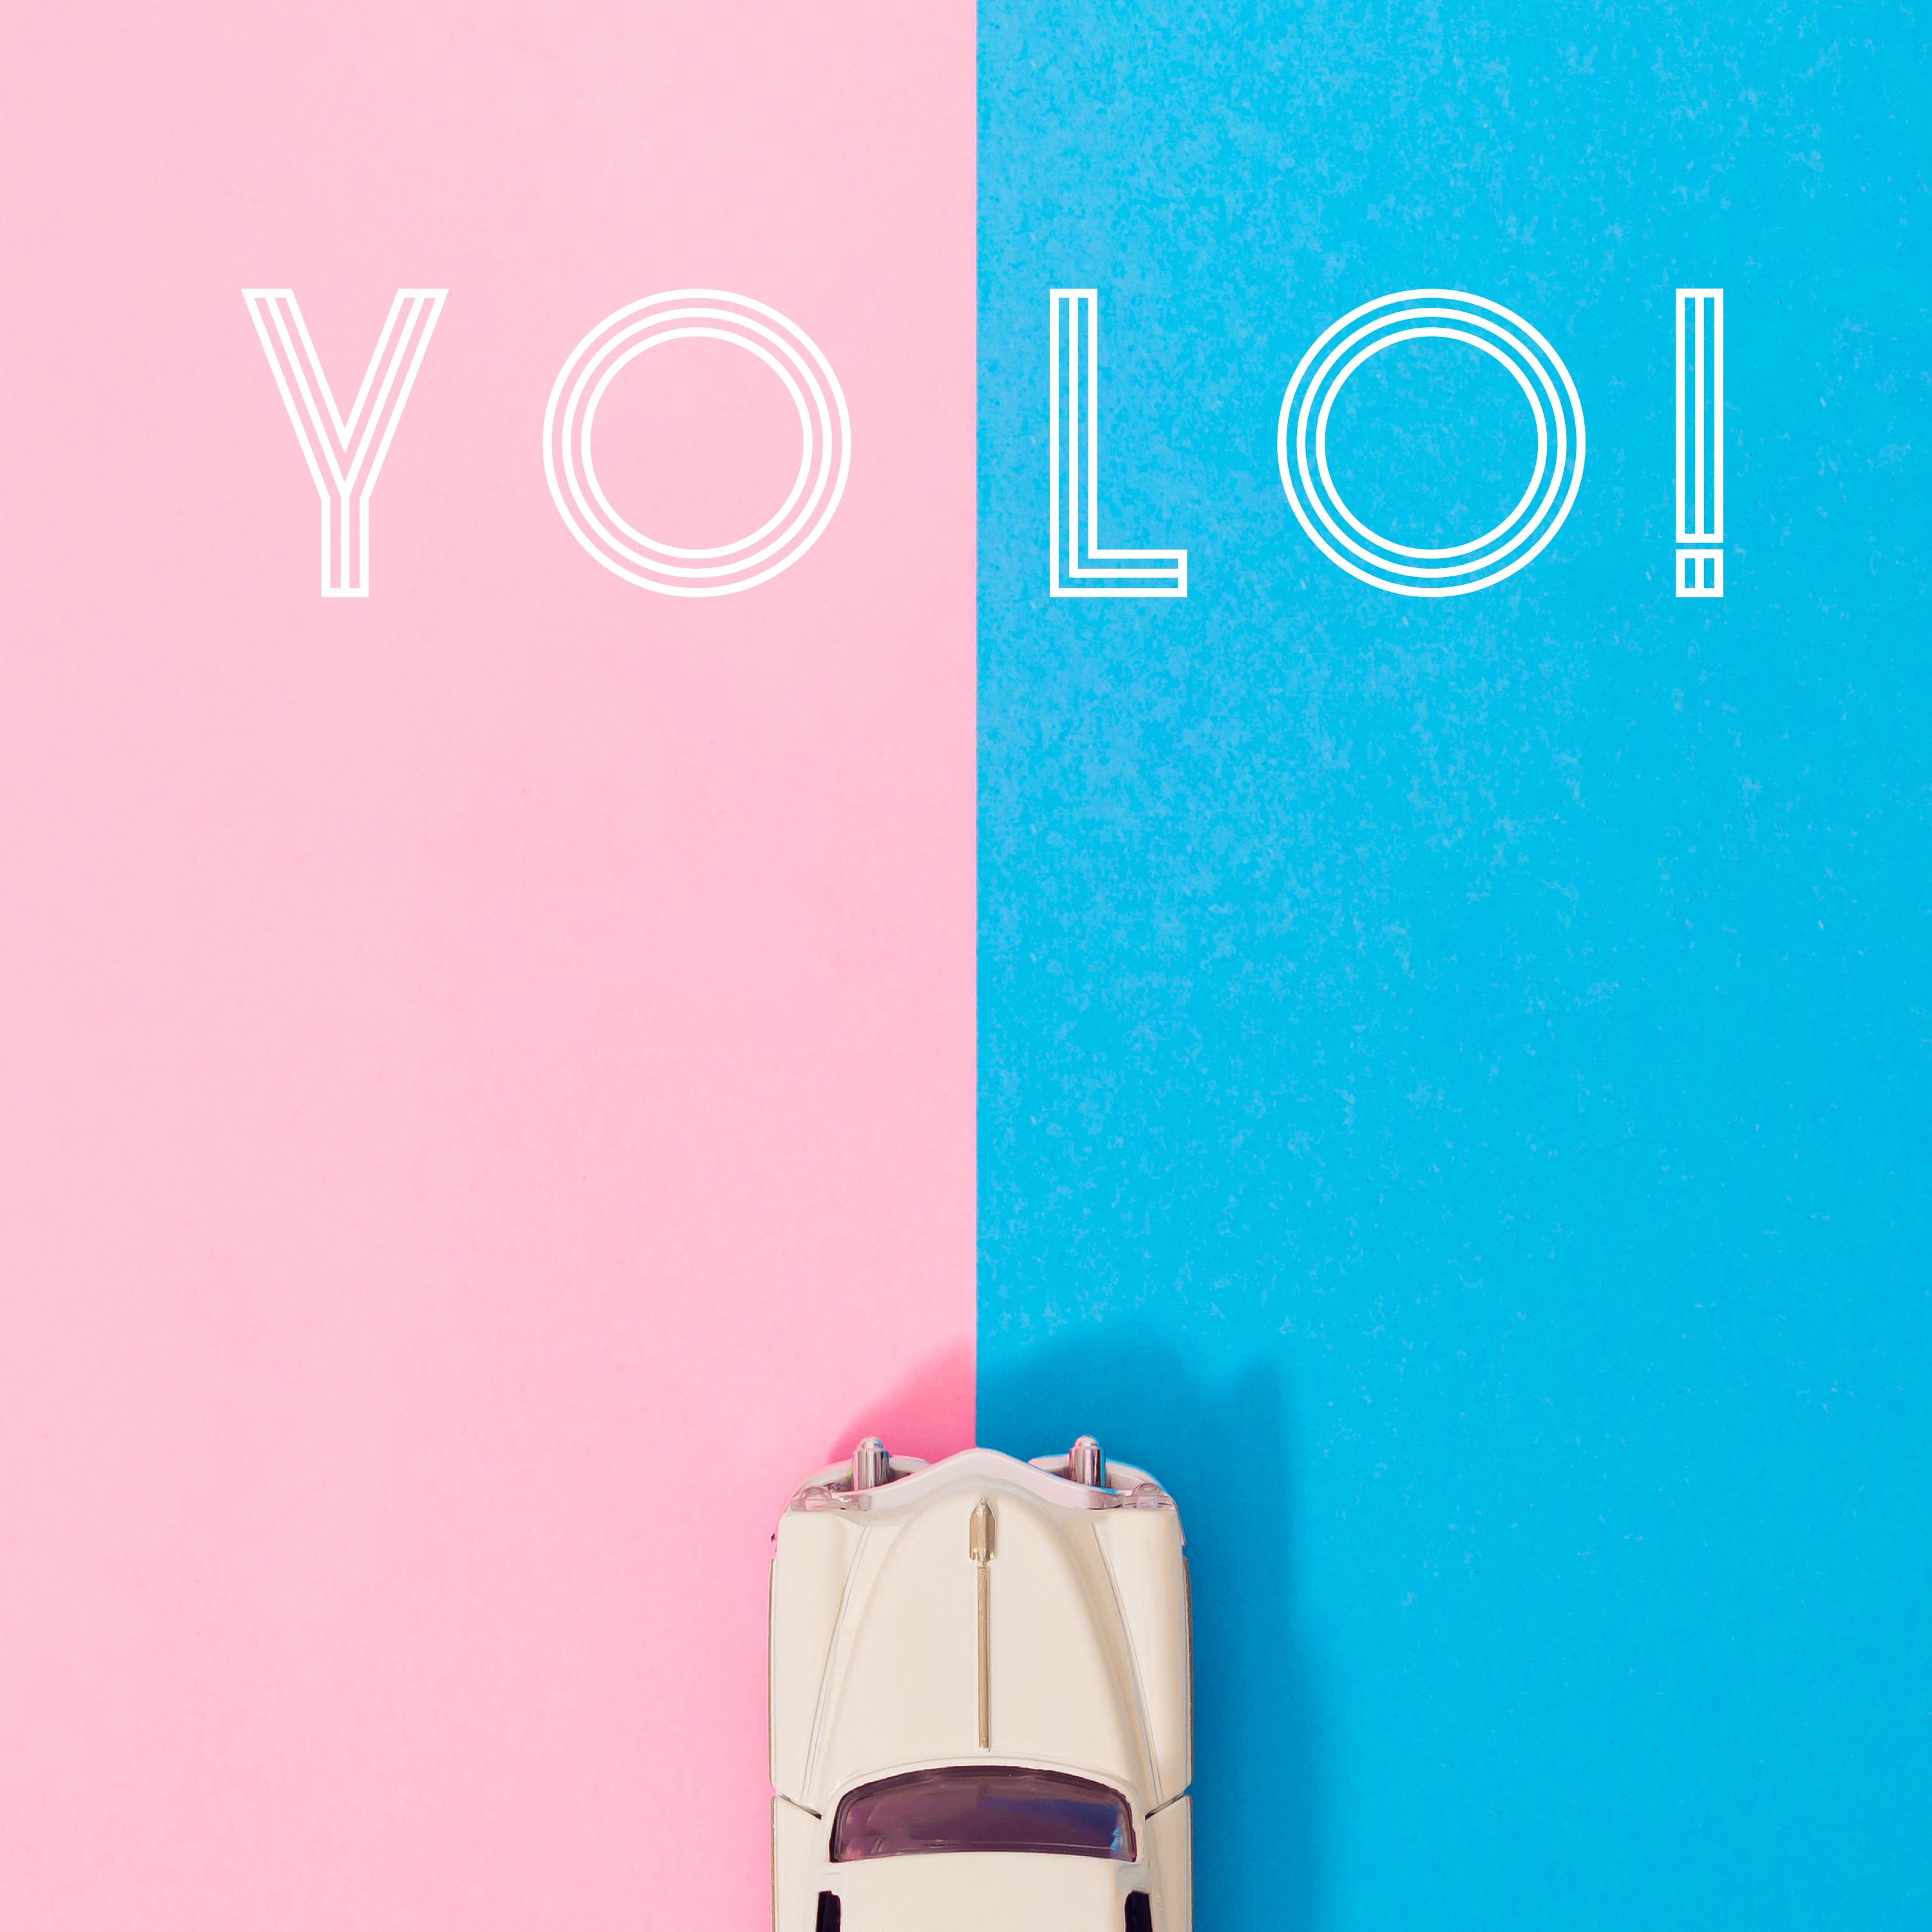 友希 Digital Single「YOLO！」